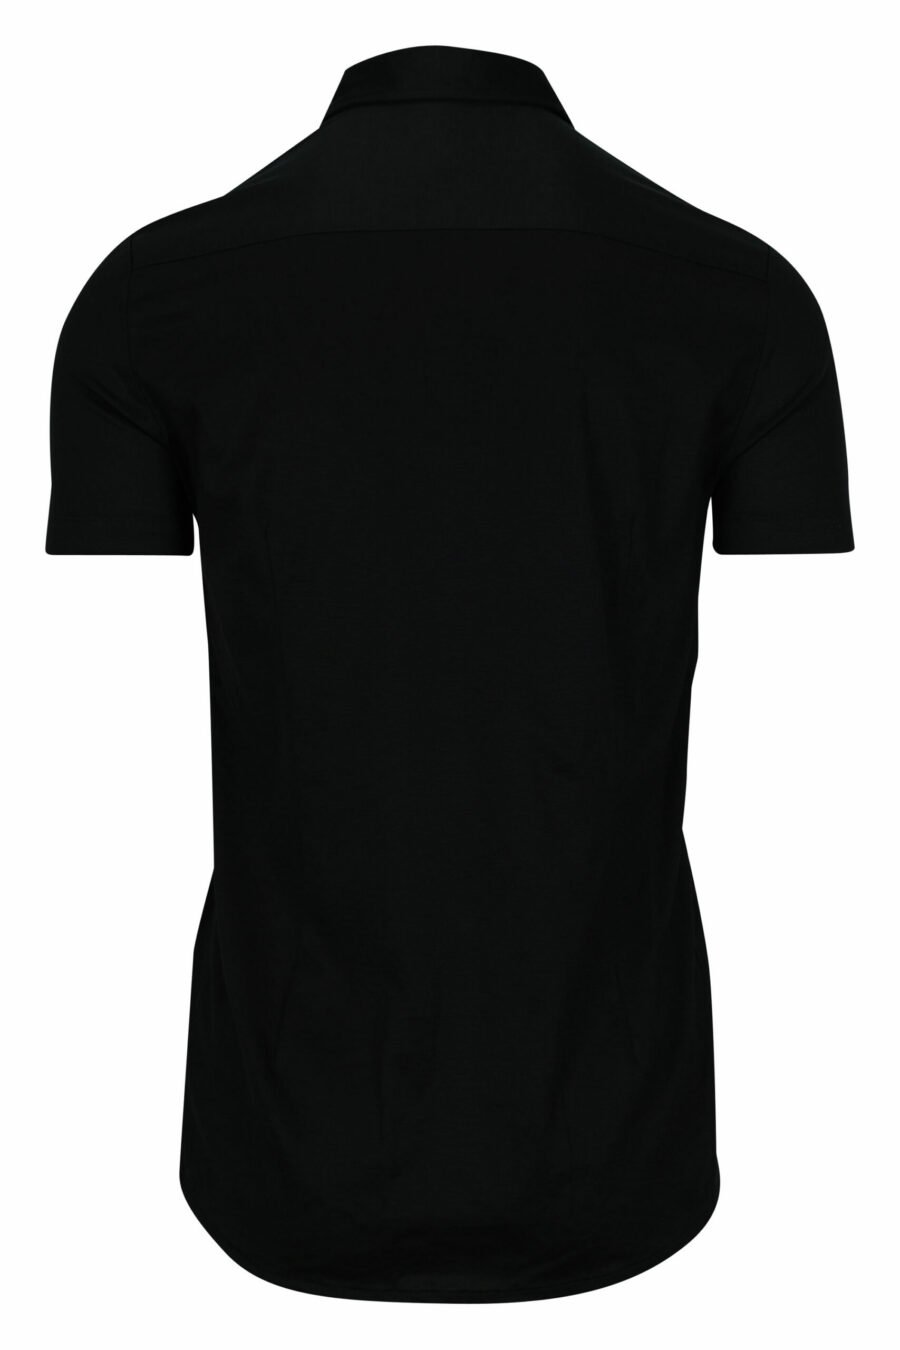 Chemise noire à manches courtes avec logo eagle mini - 8056861420206 1 scaled